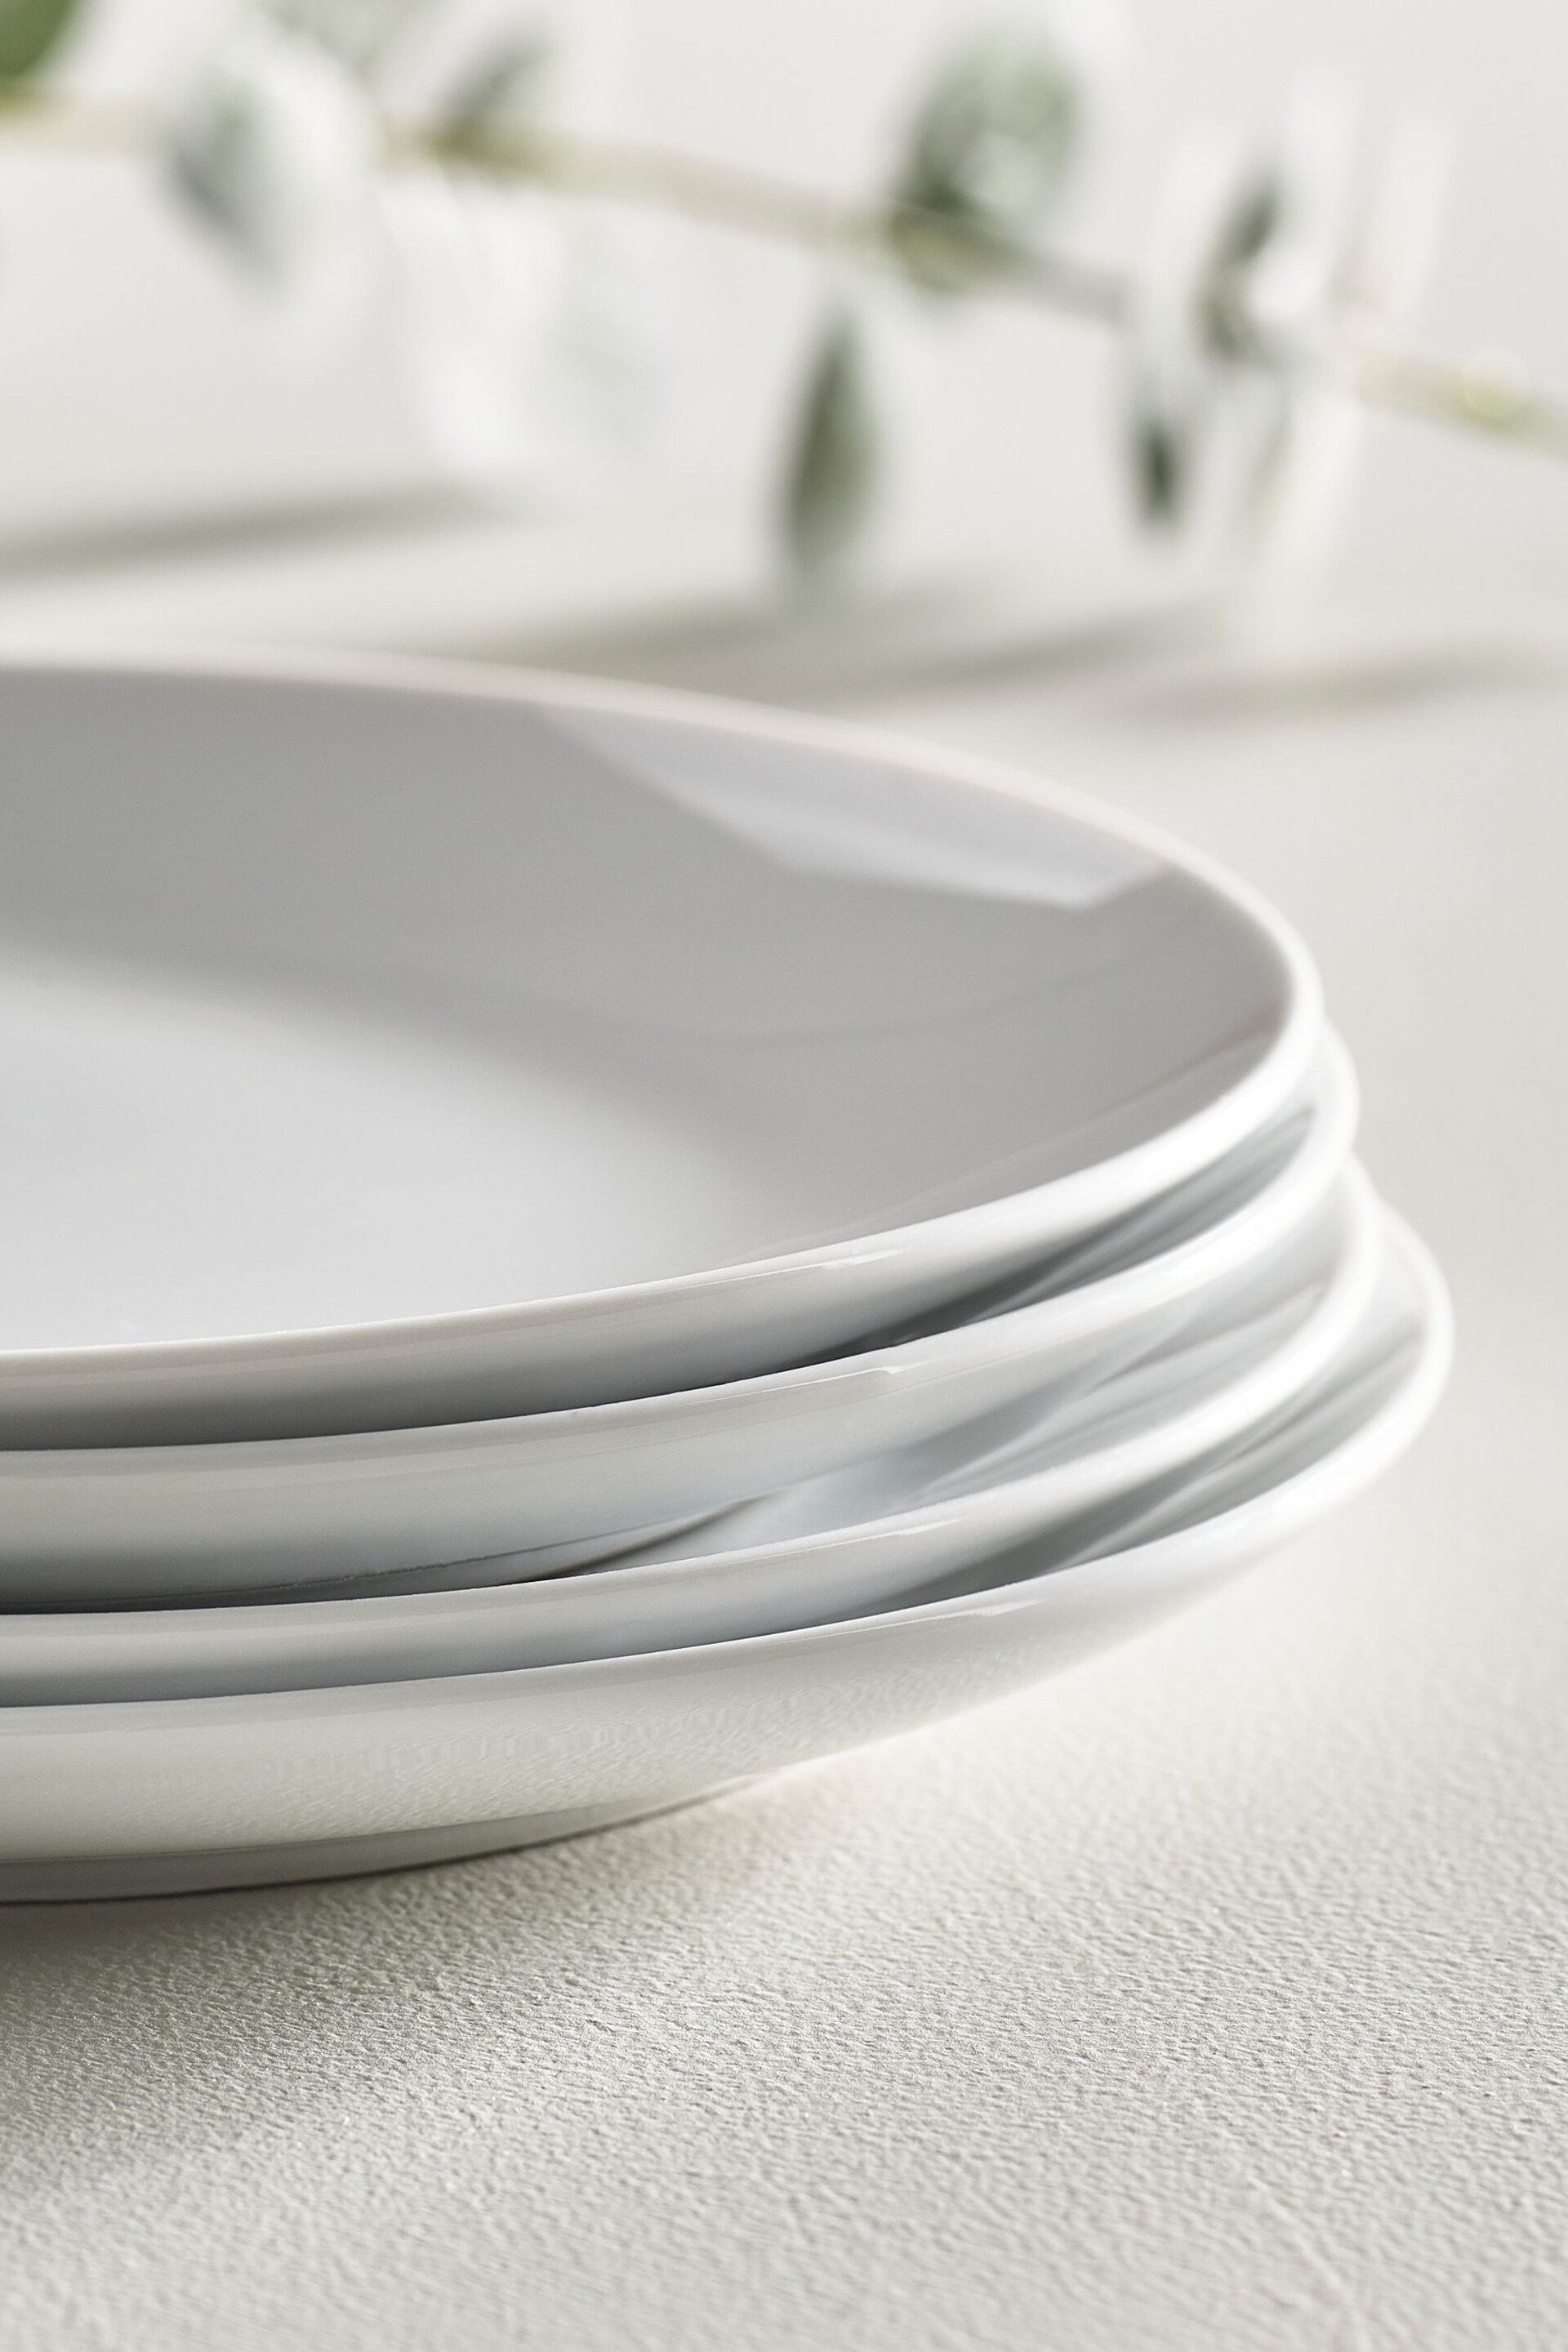 White Nova Dinnerware Set of 4 Side Plates - Image 2 of 3